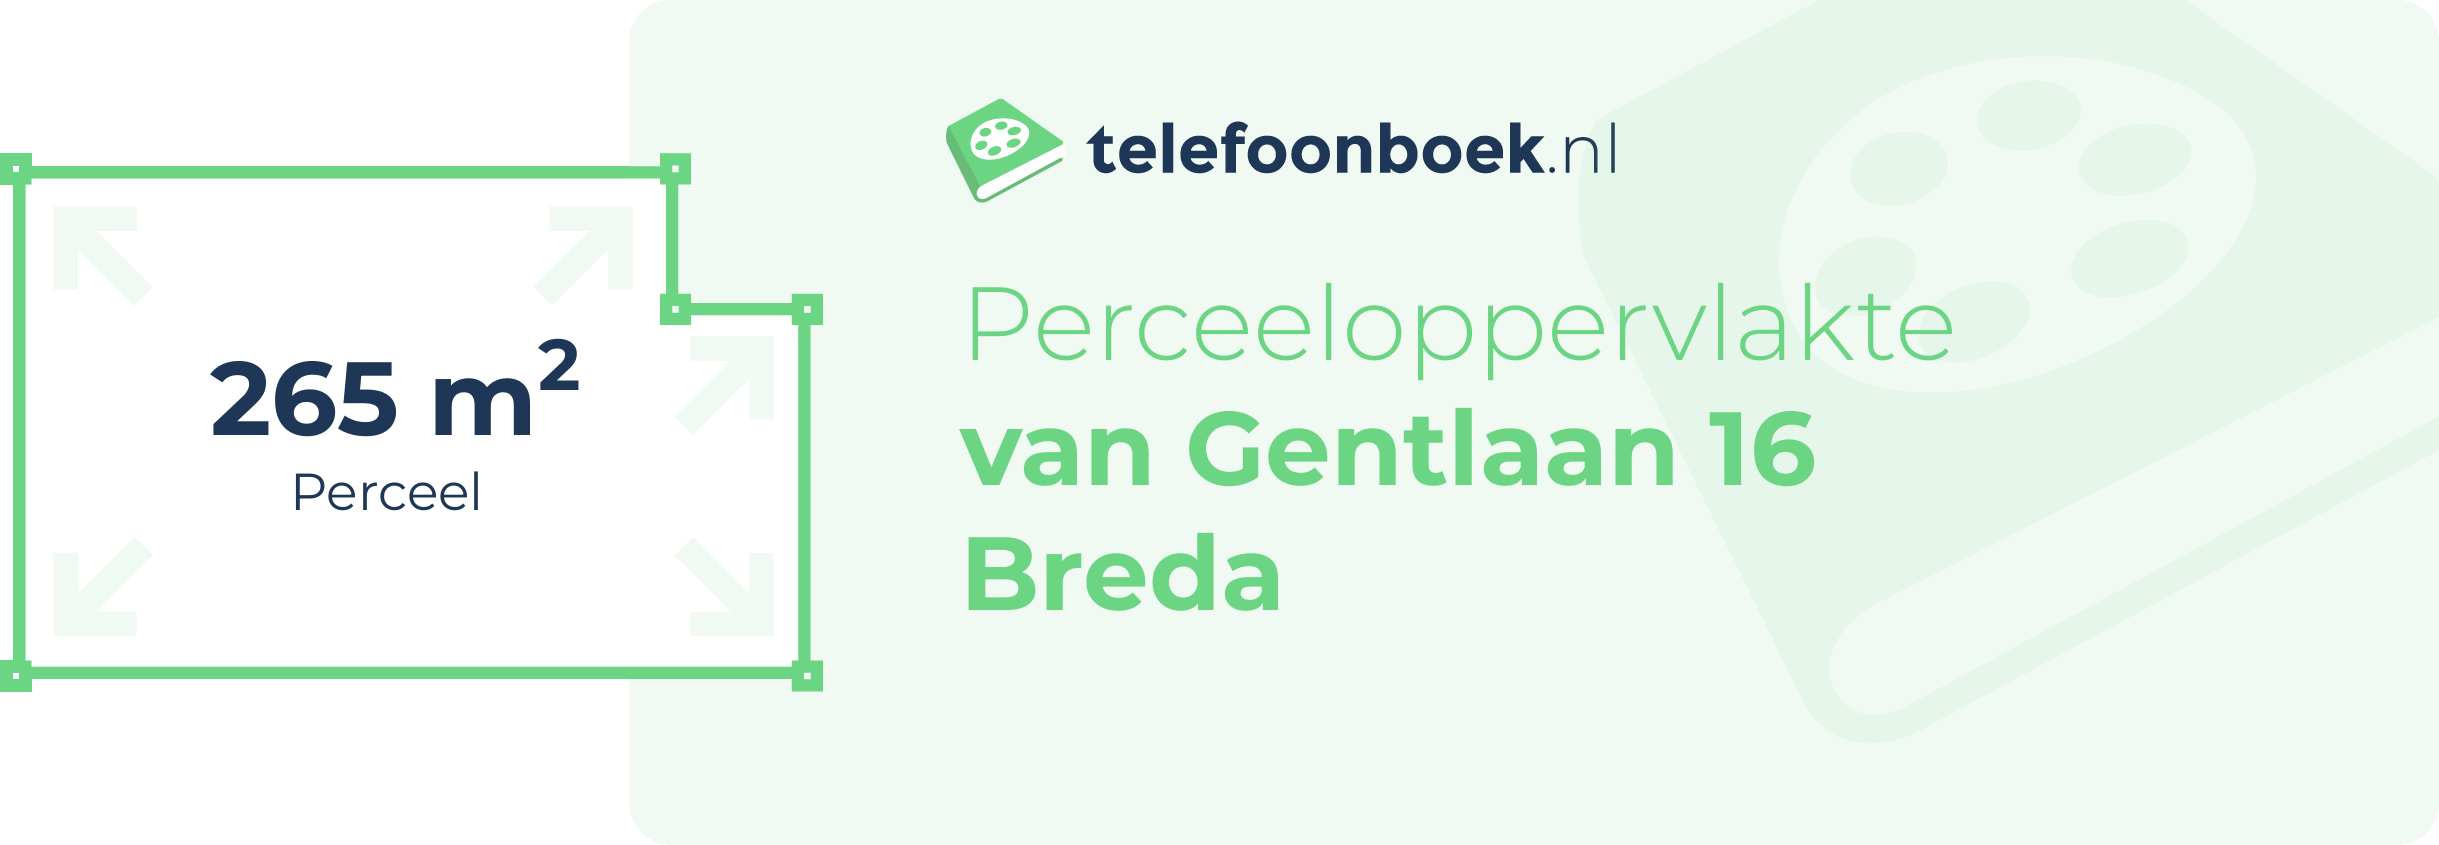 Perceeloppervlakte Van Gentlaan 16 Breda